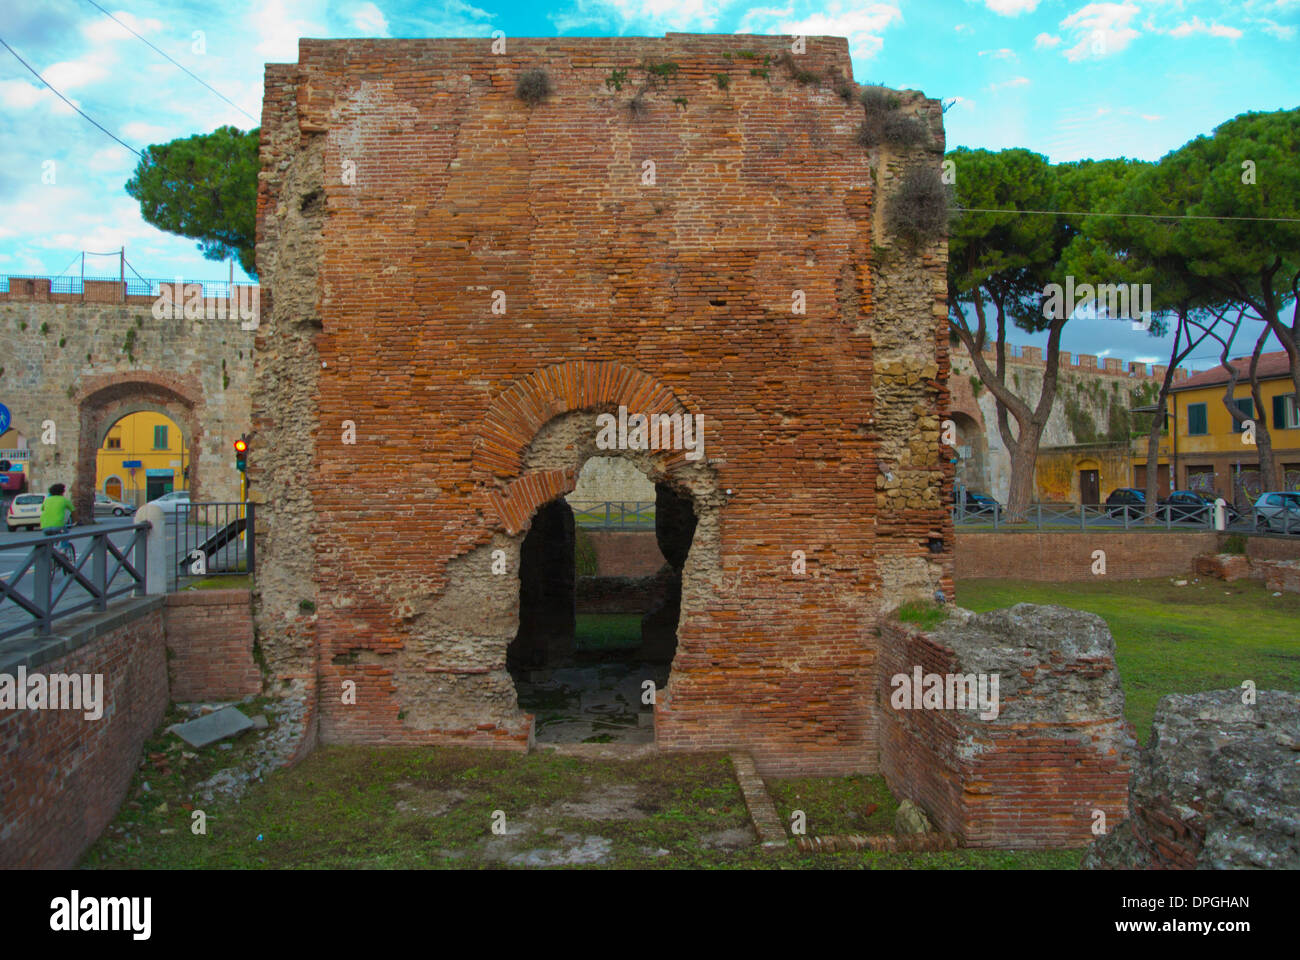 Ruines de Terme di Nerone thermes de Largo place ville Parlascio région Toscane Italie Europe Banque D'Images